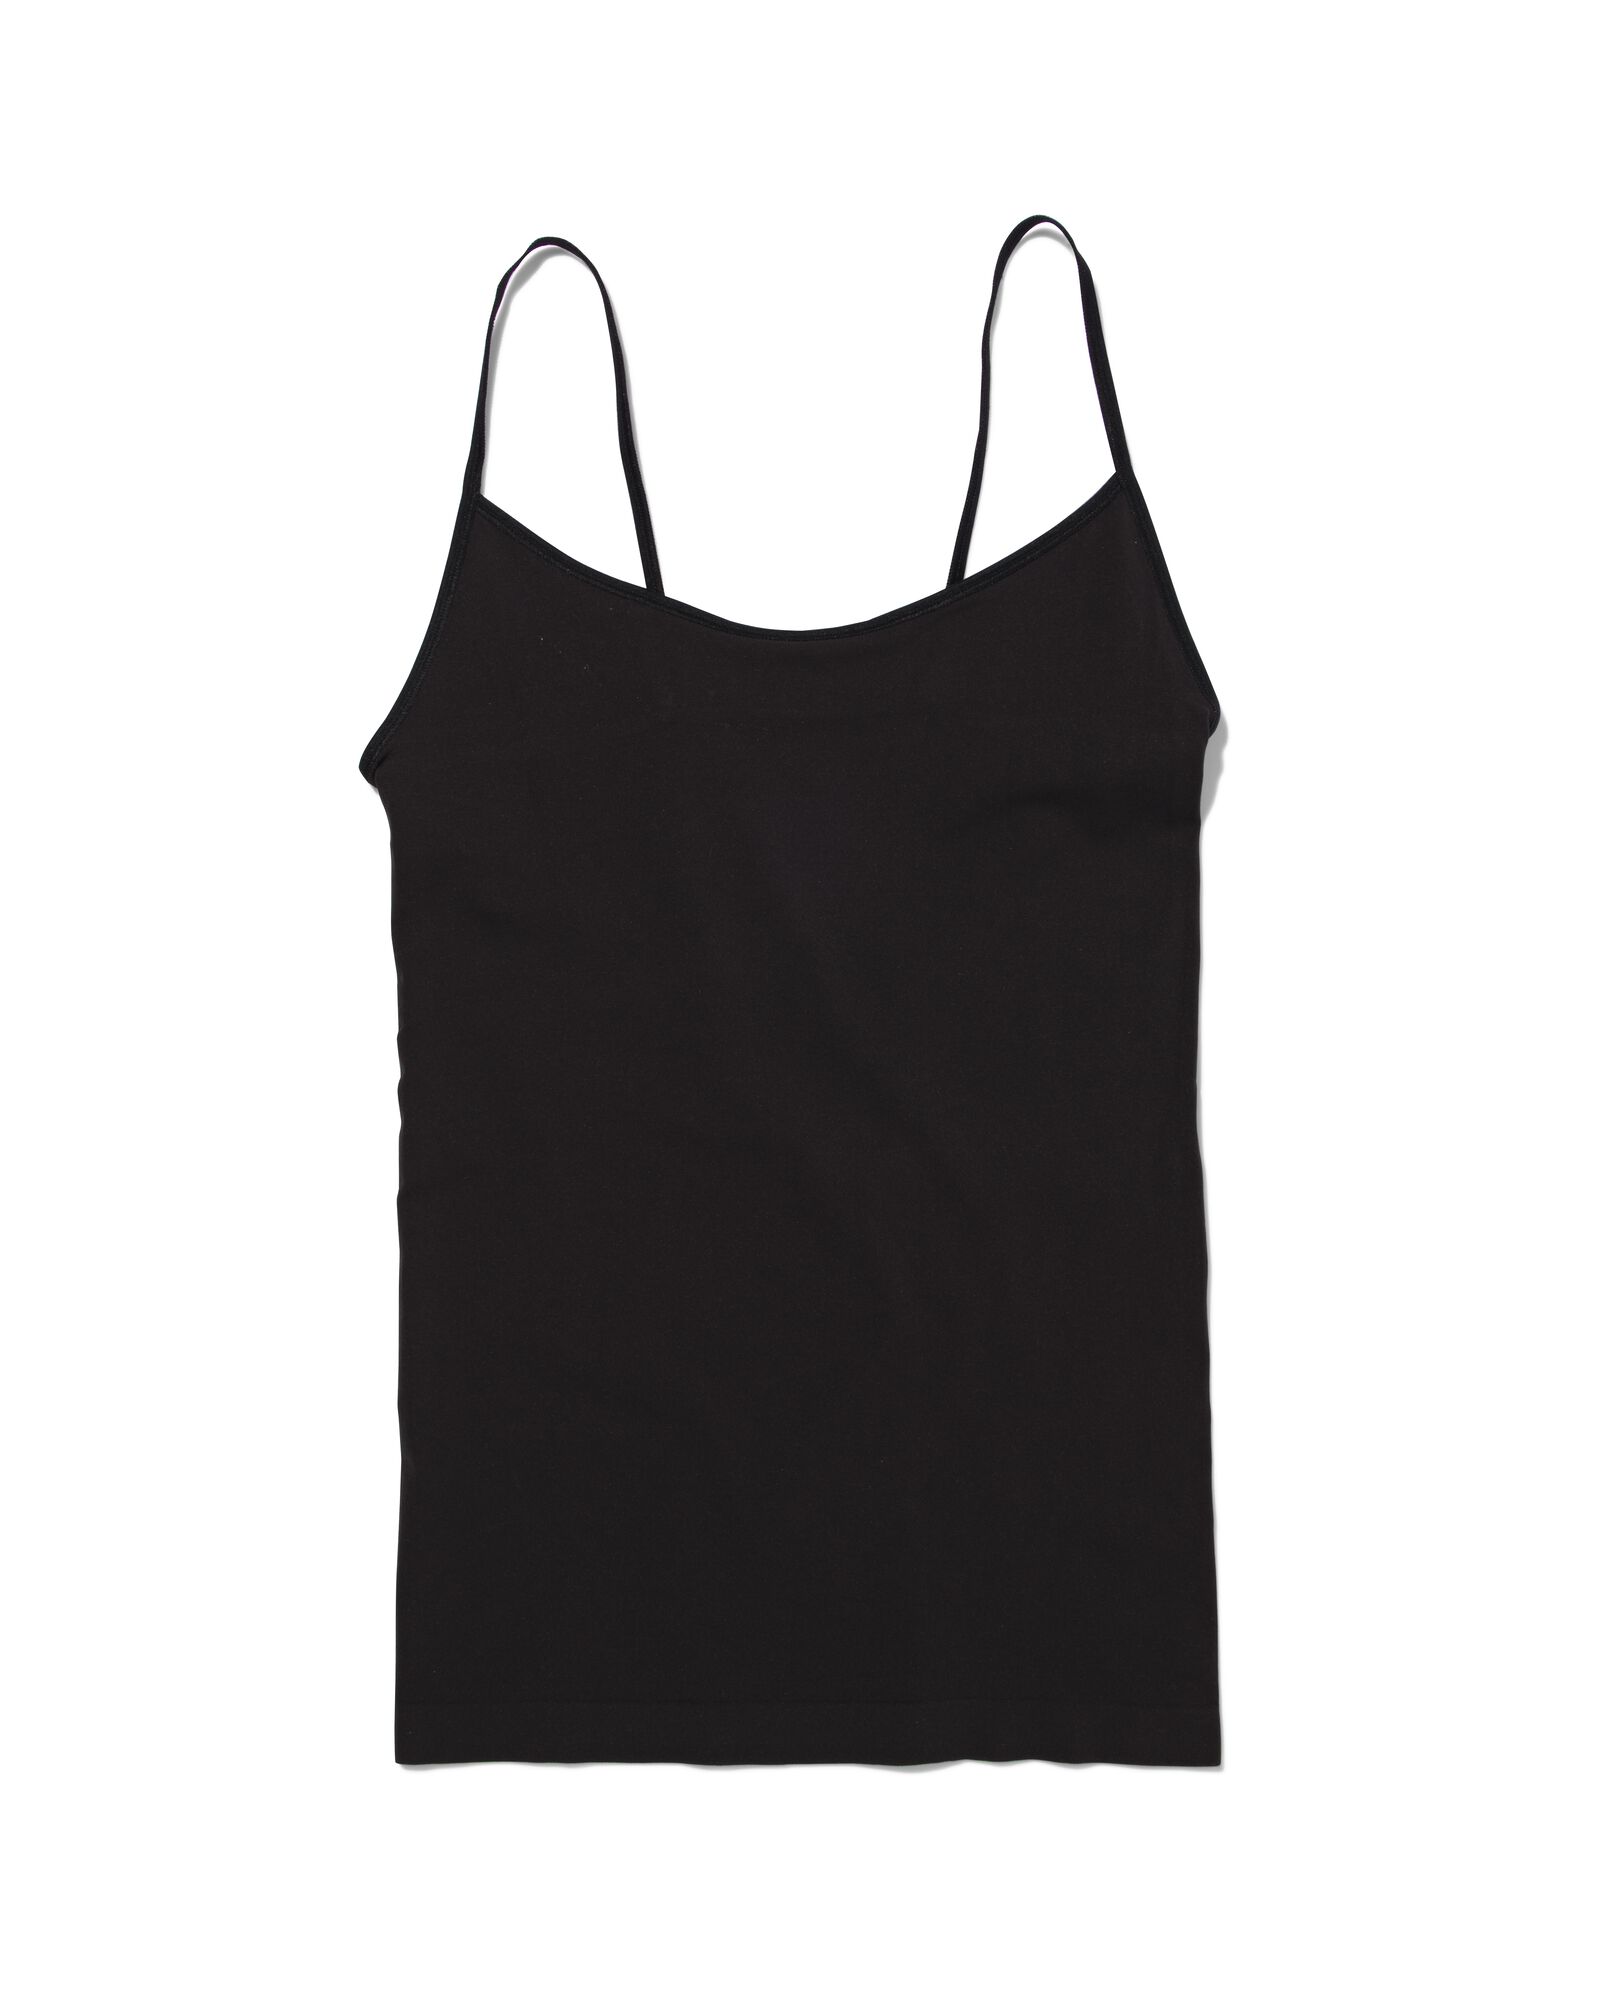 dameshemd zwart XL - 19687414 - HEMA